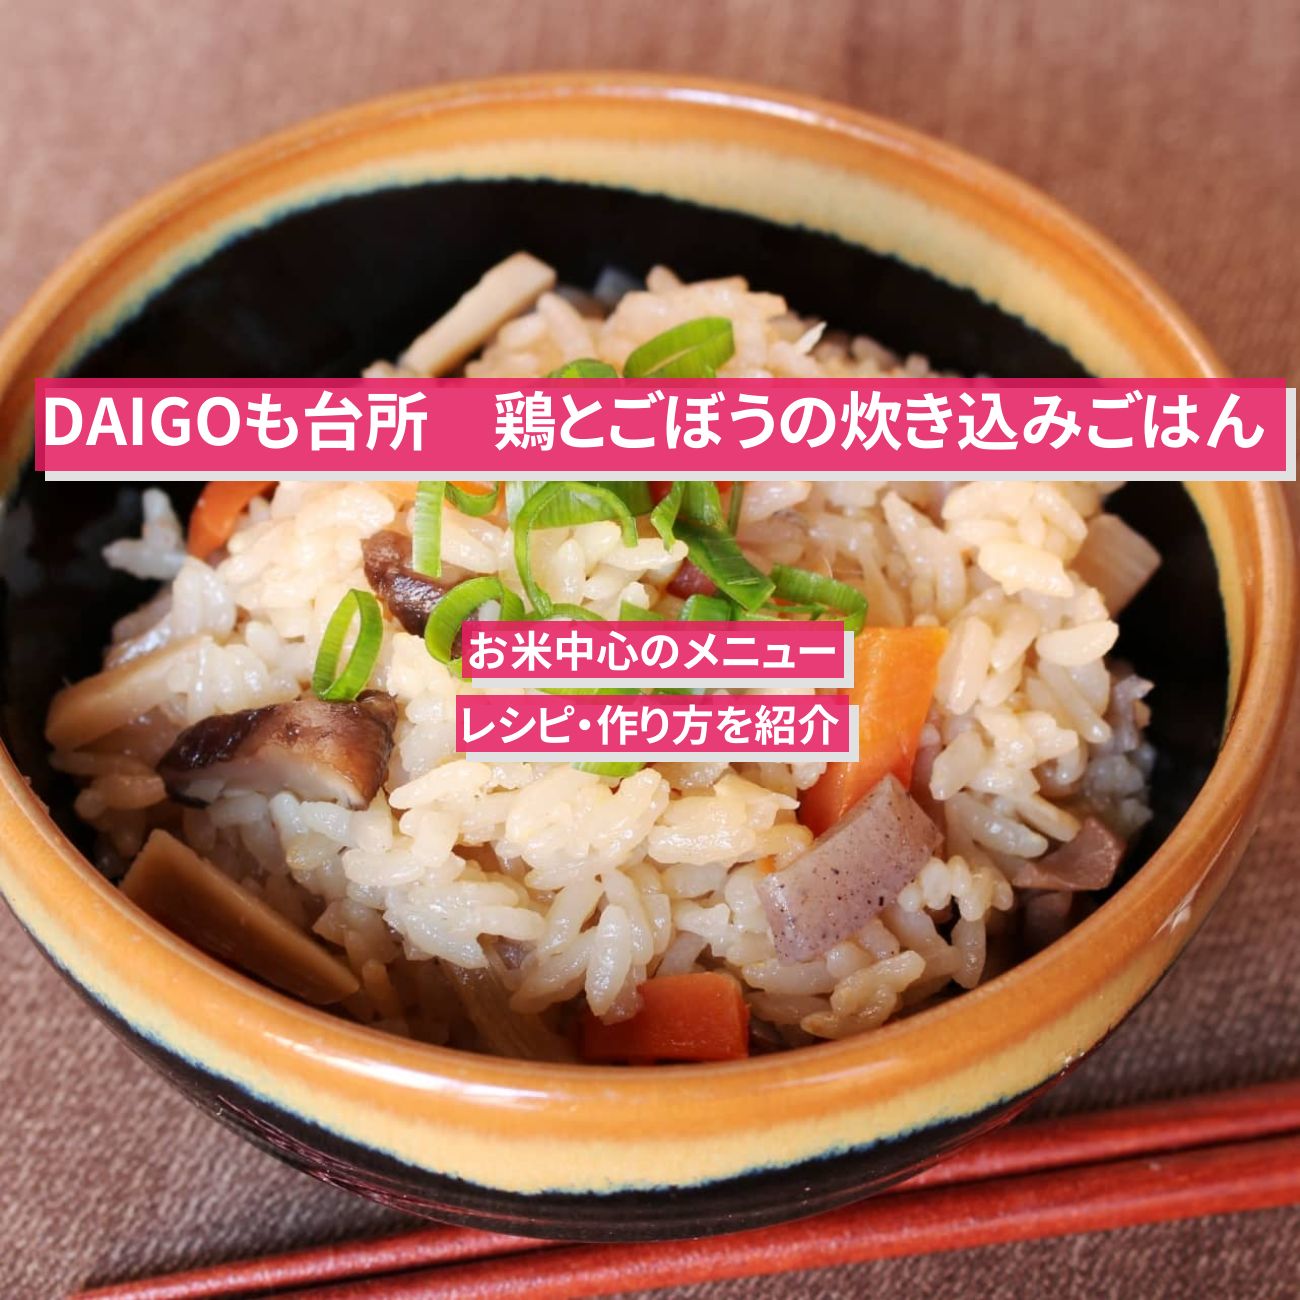 【DAIGOも台所】『鶏とごぼうの炊き込みごはん』のレシピ・作り方を紹介